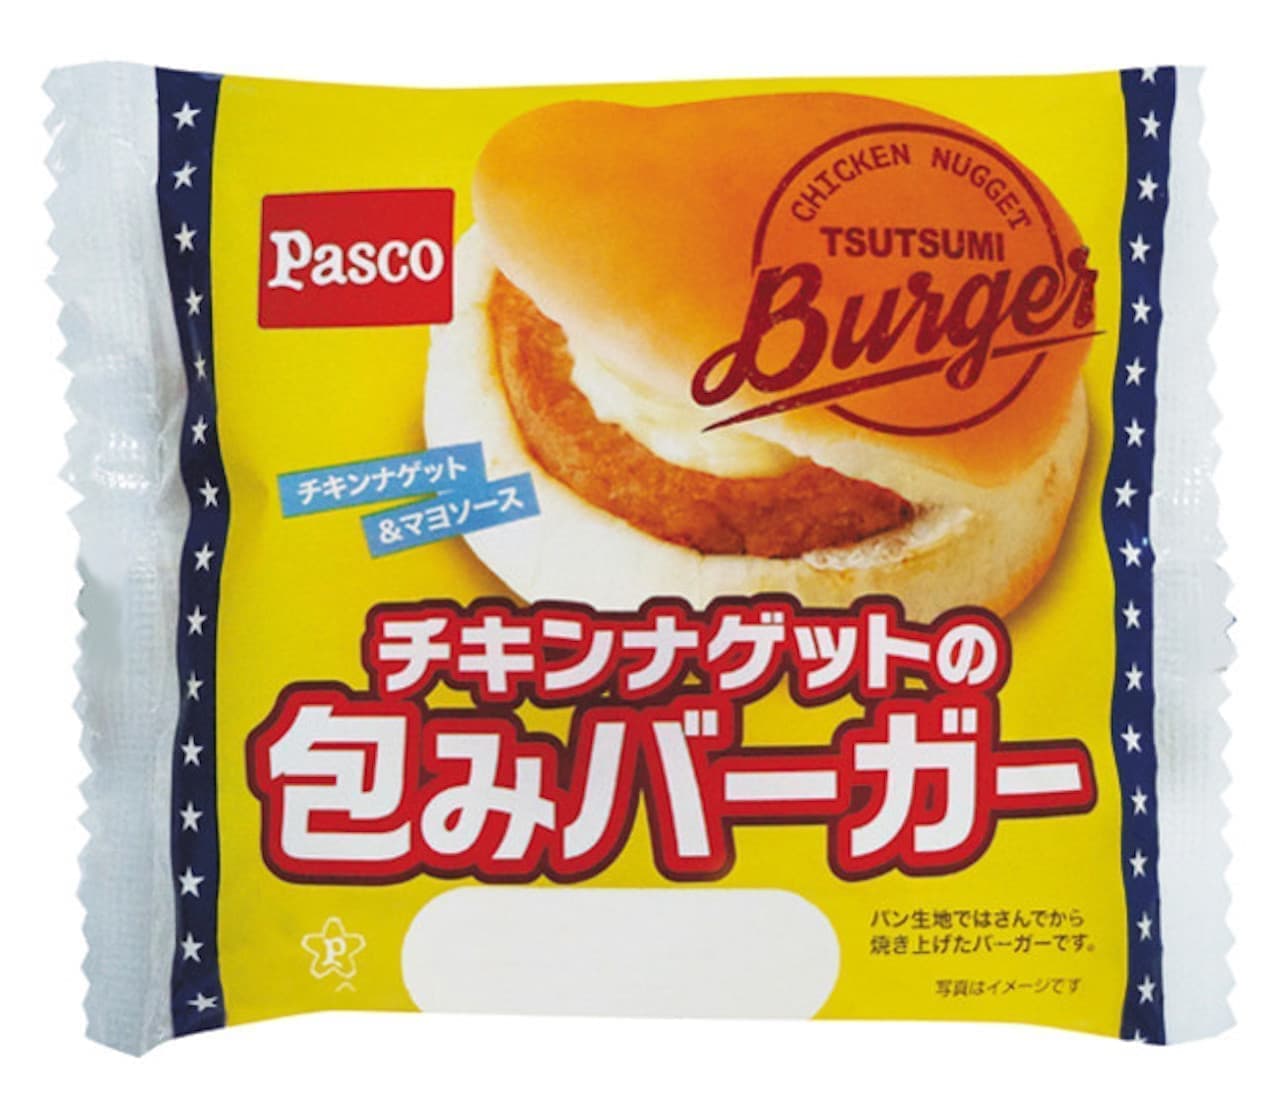 パスコ Pasco 21年1月新商品売れ筋ランキングをチェック 紅芋パンケーキ 紅芋あん マーガリン2個入 など えん食べ